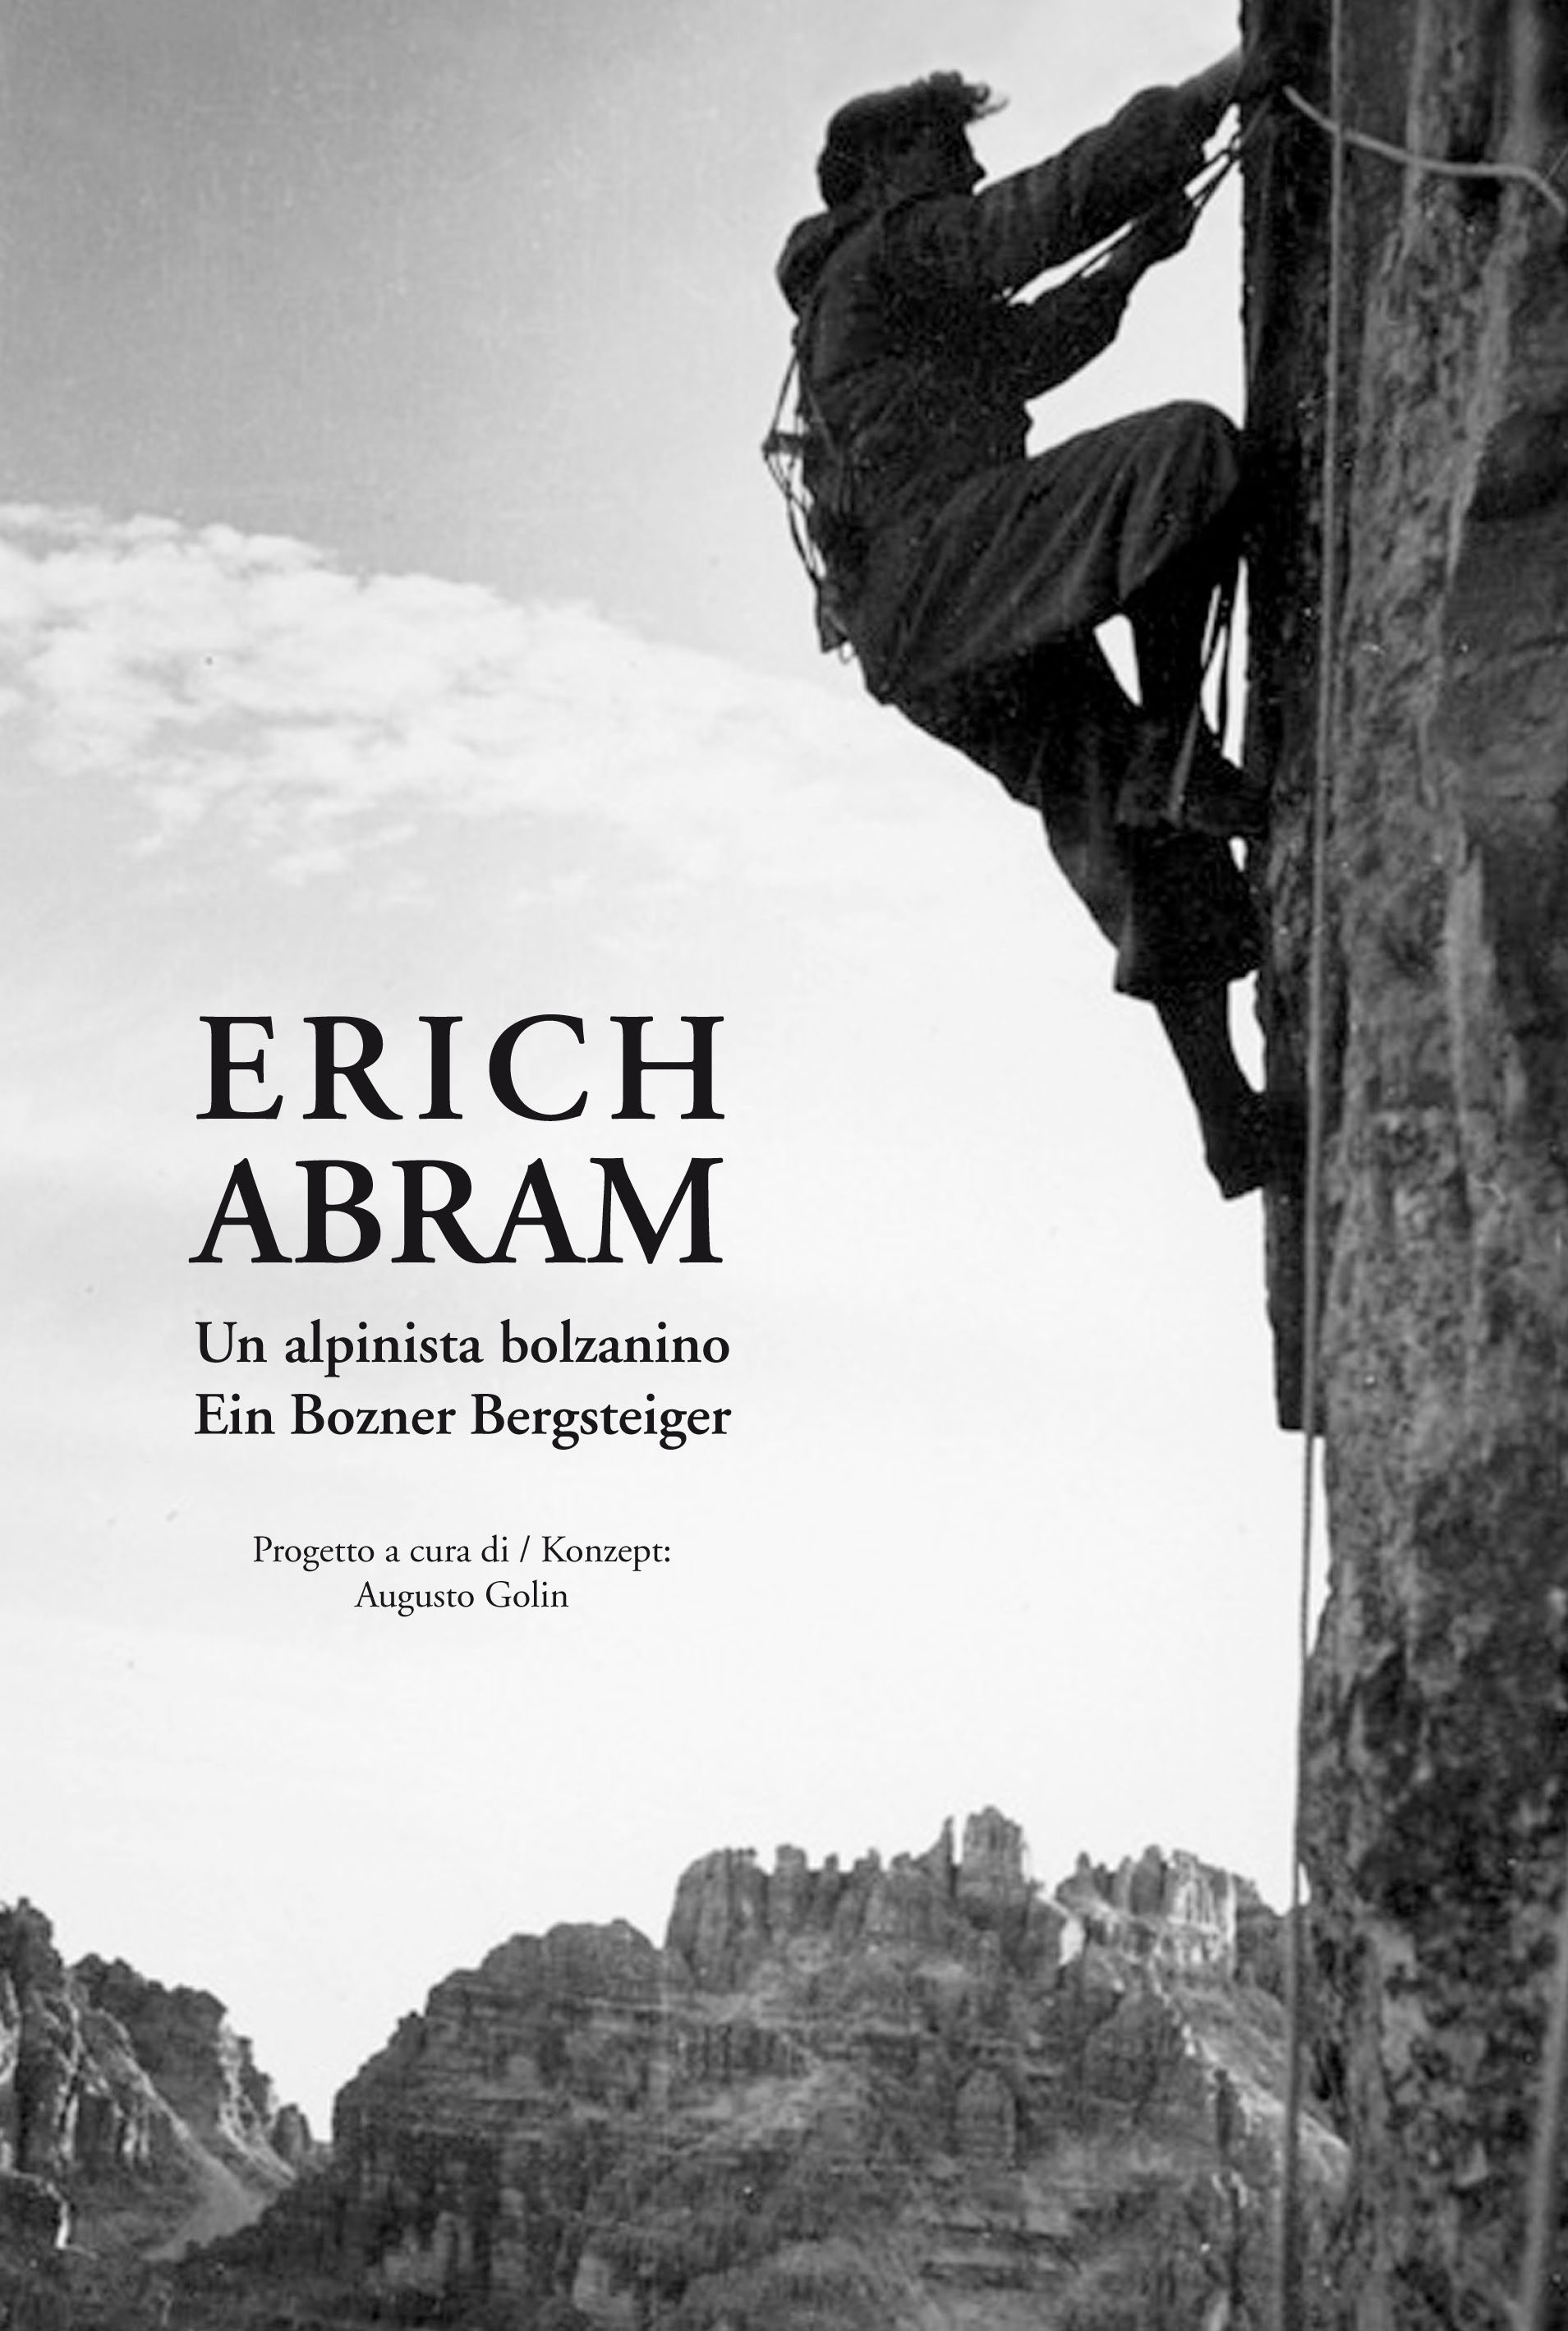 Erich Abram, la storia dell’alpinista bolzanino diventa un libro